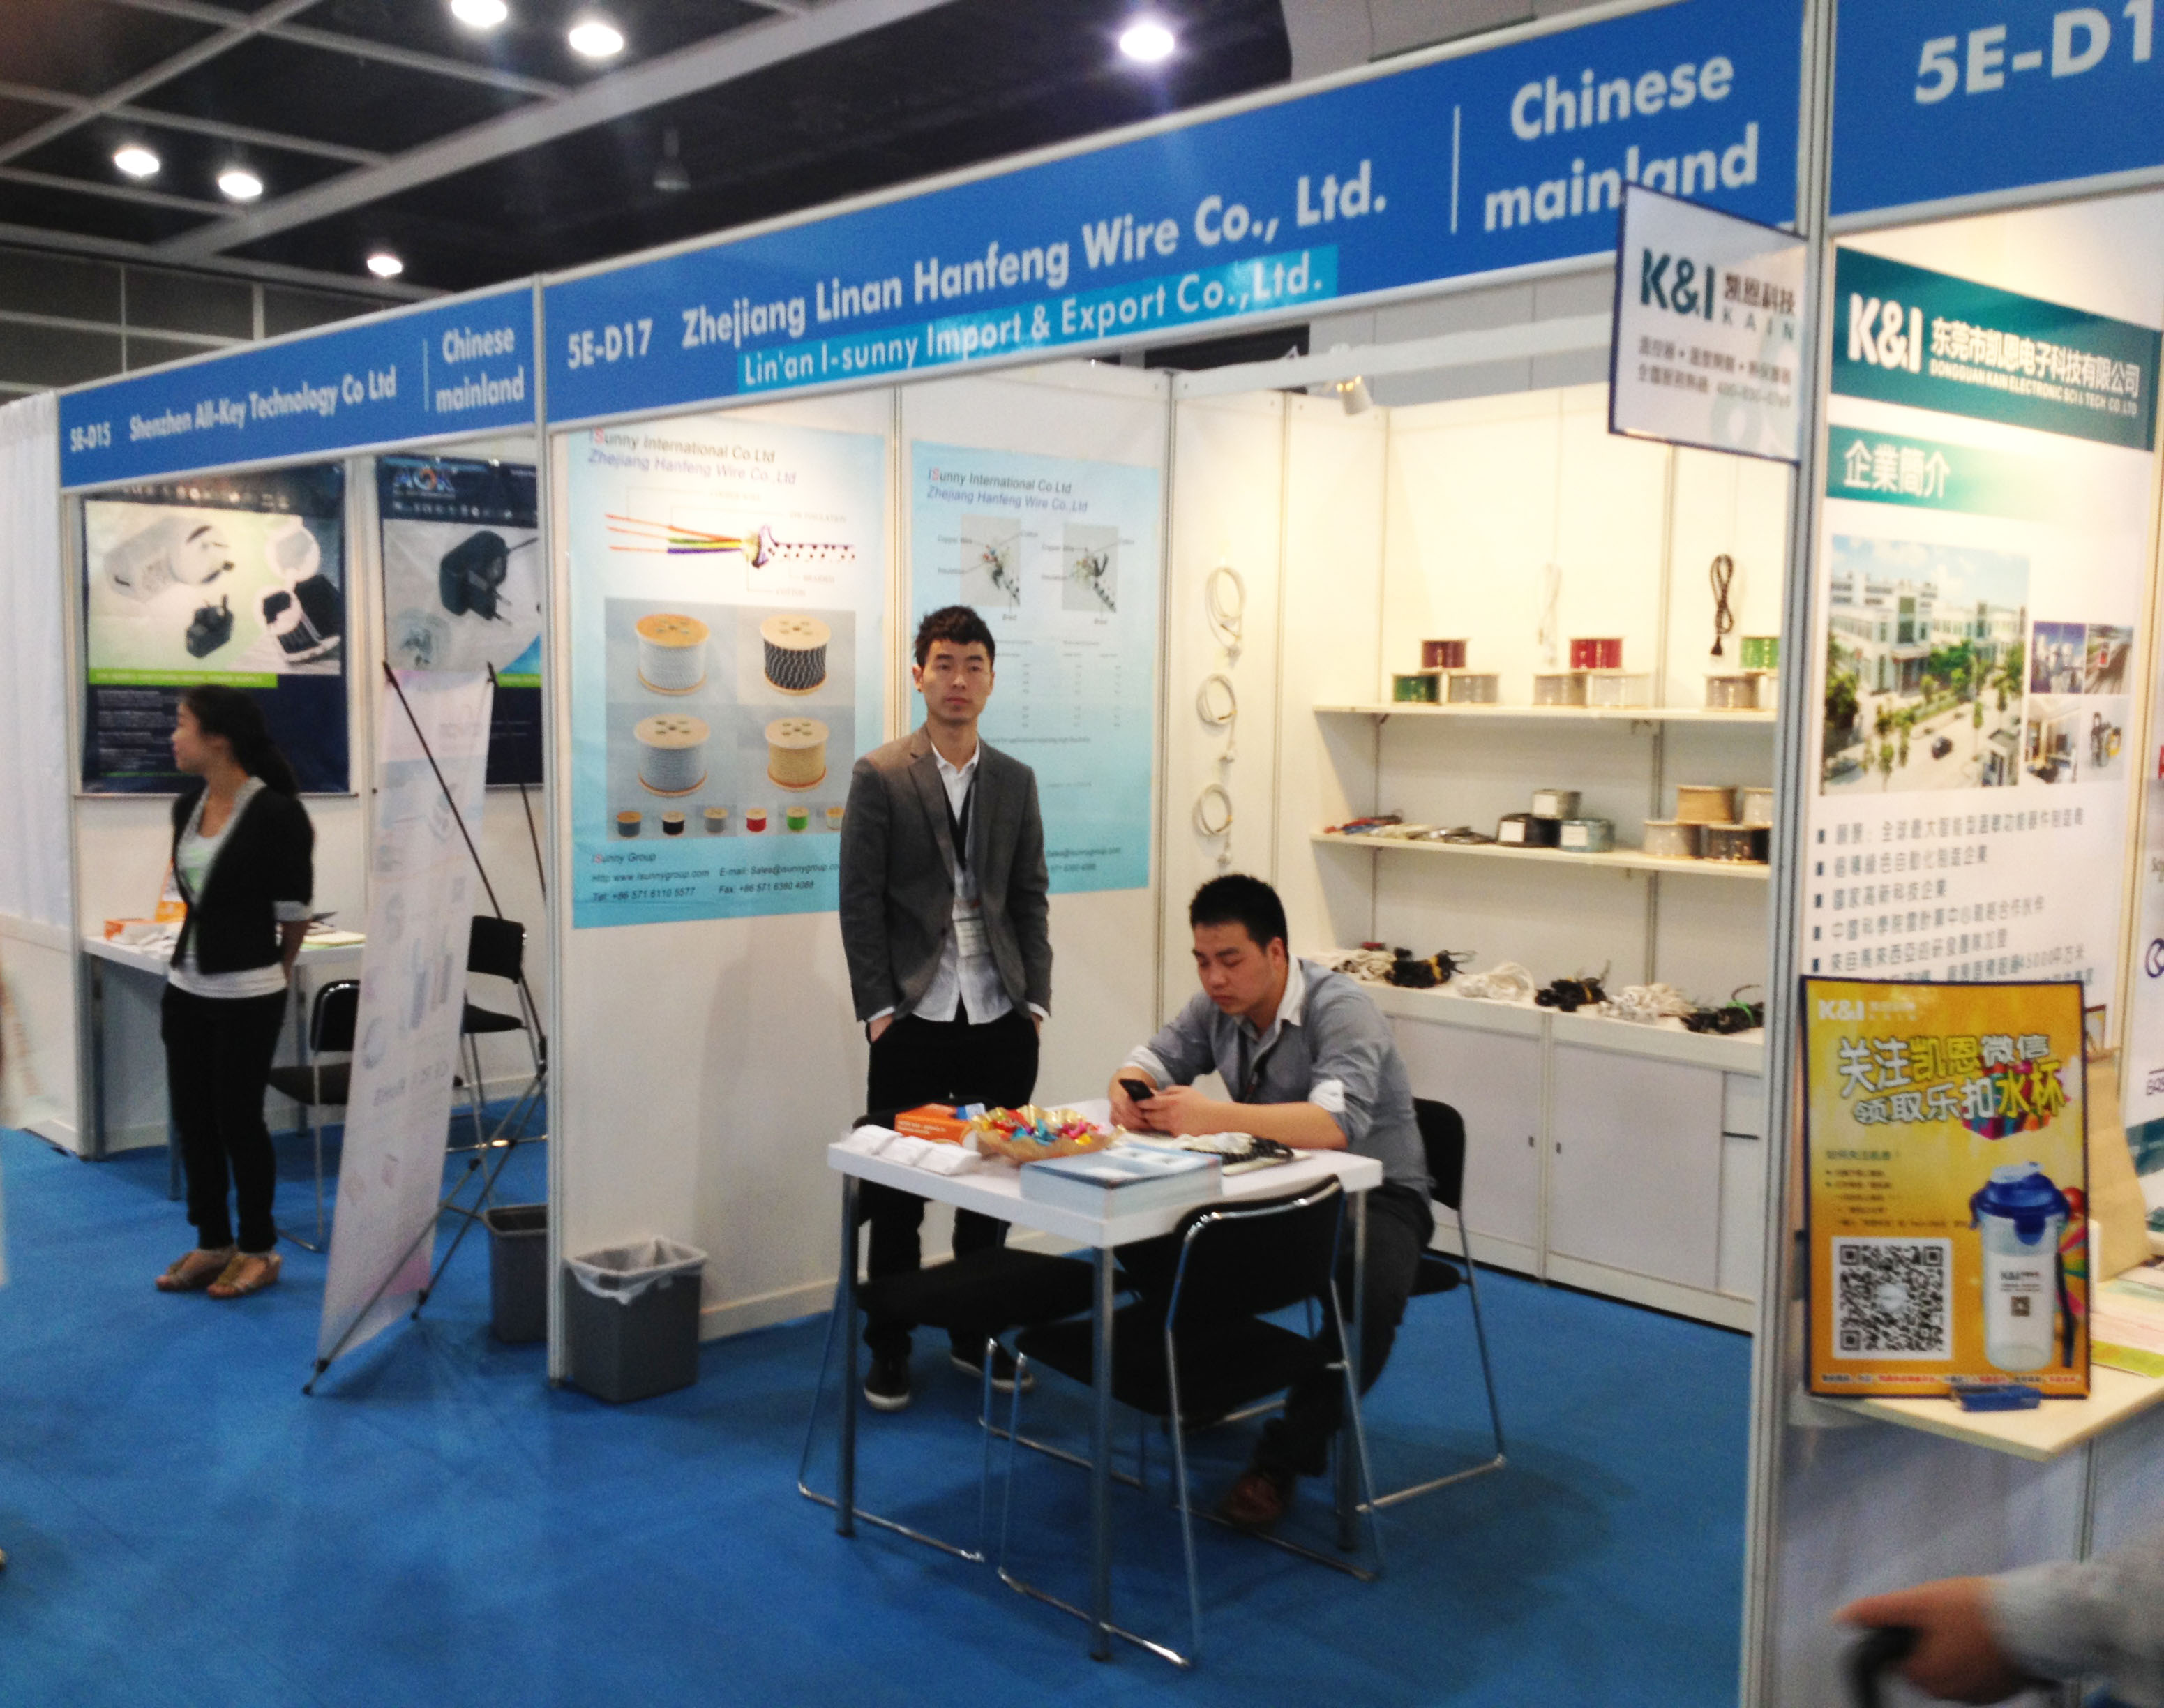 Hong Kong Electronics Fair Exhibition on-site Photos